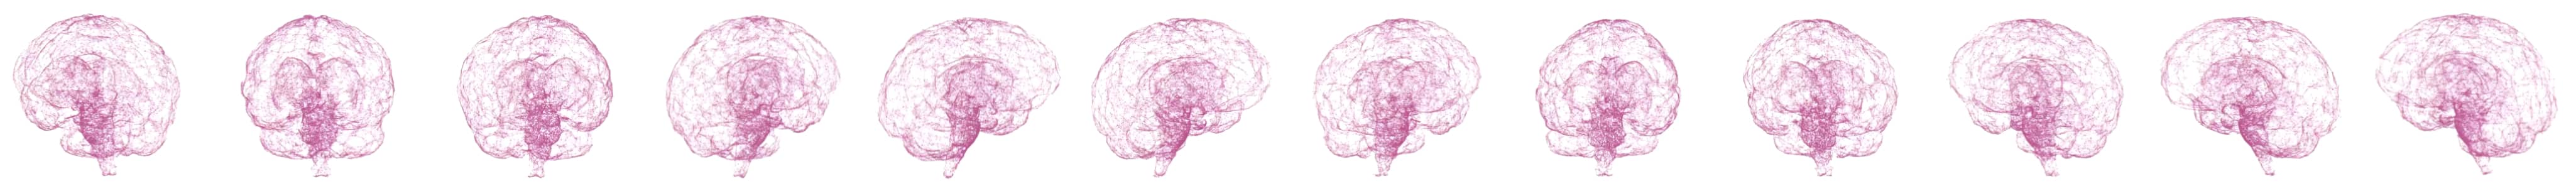 Bild eines rotierenden Gehirns